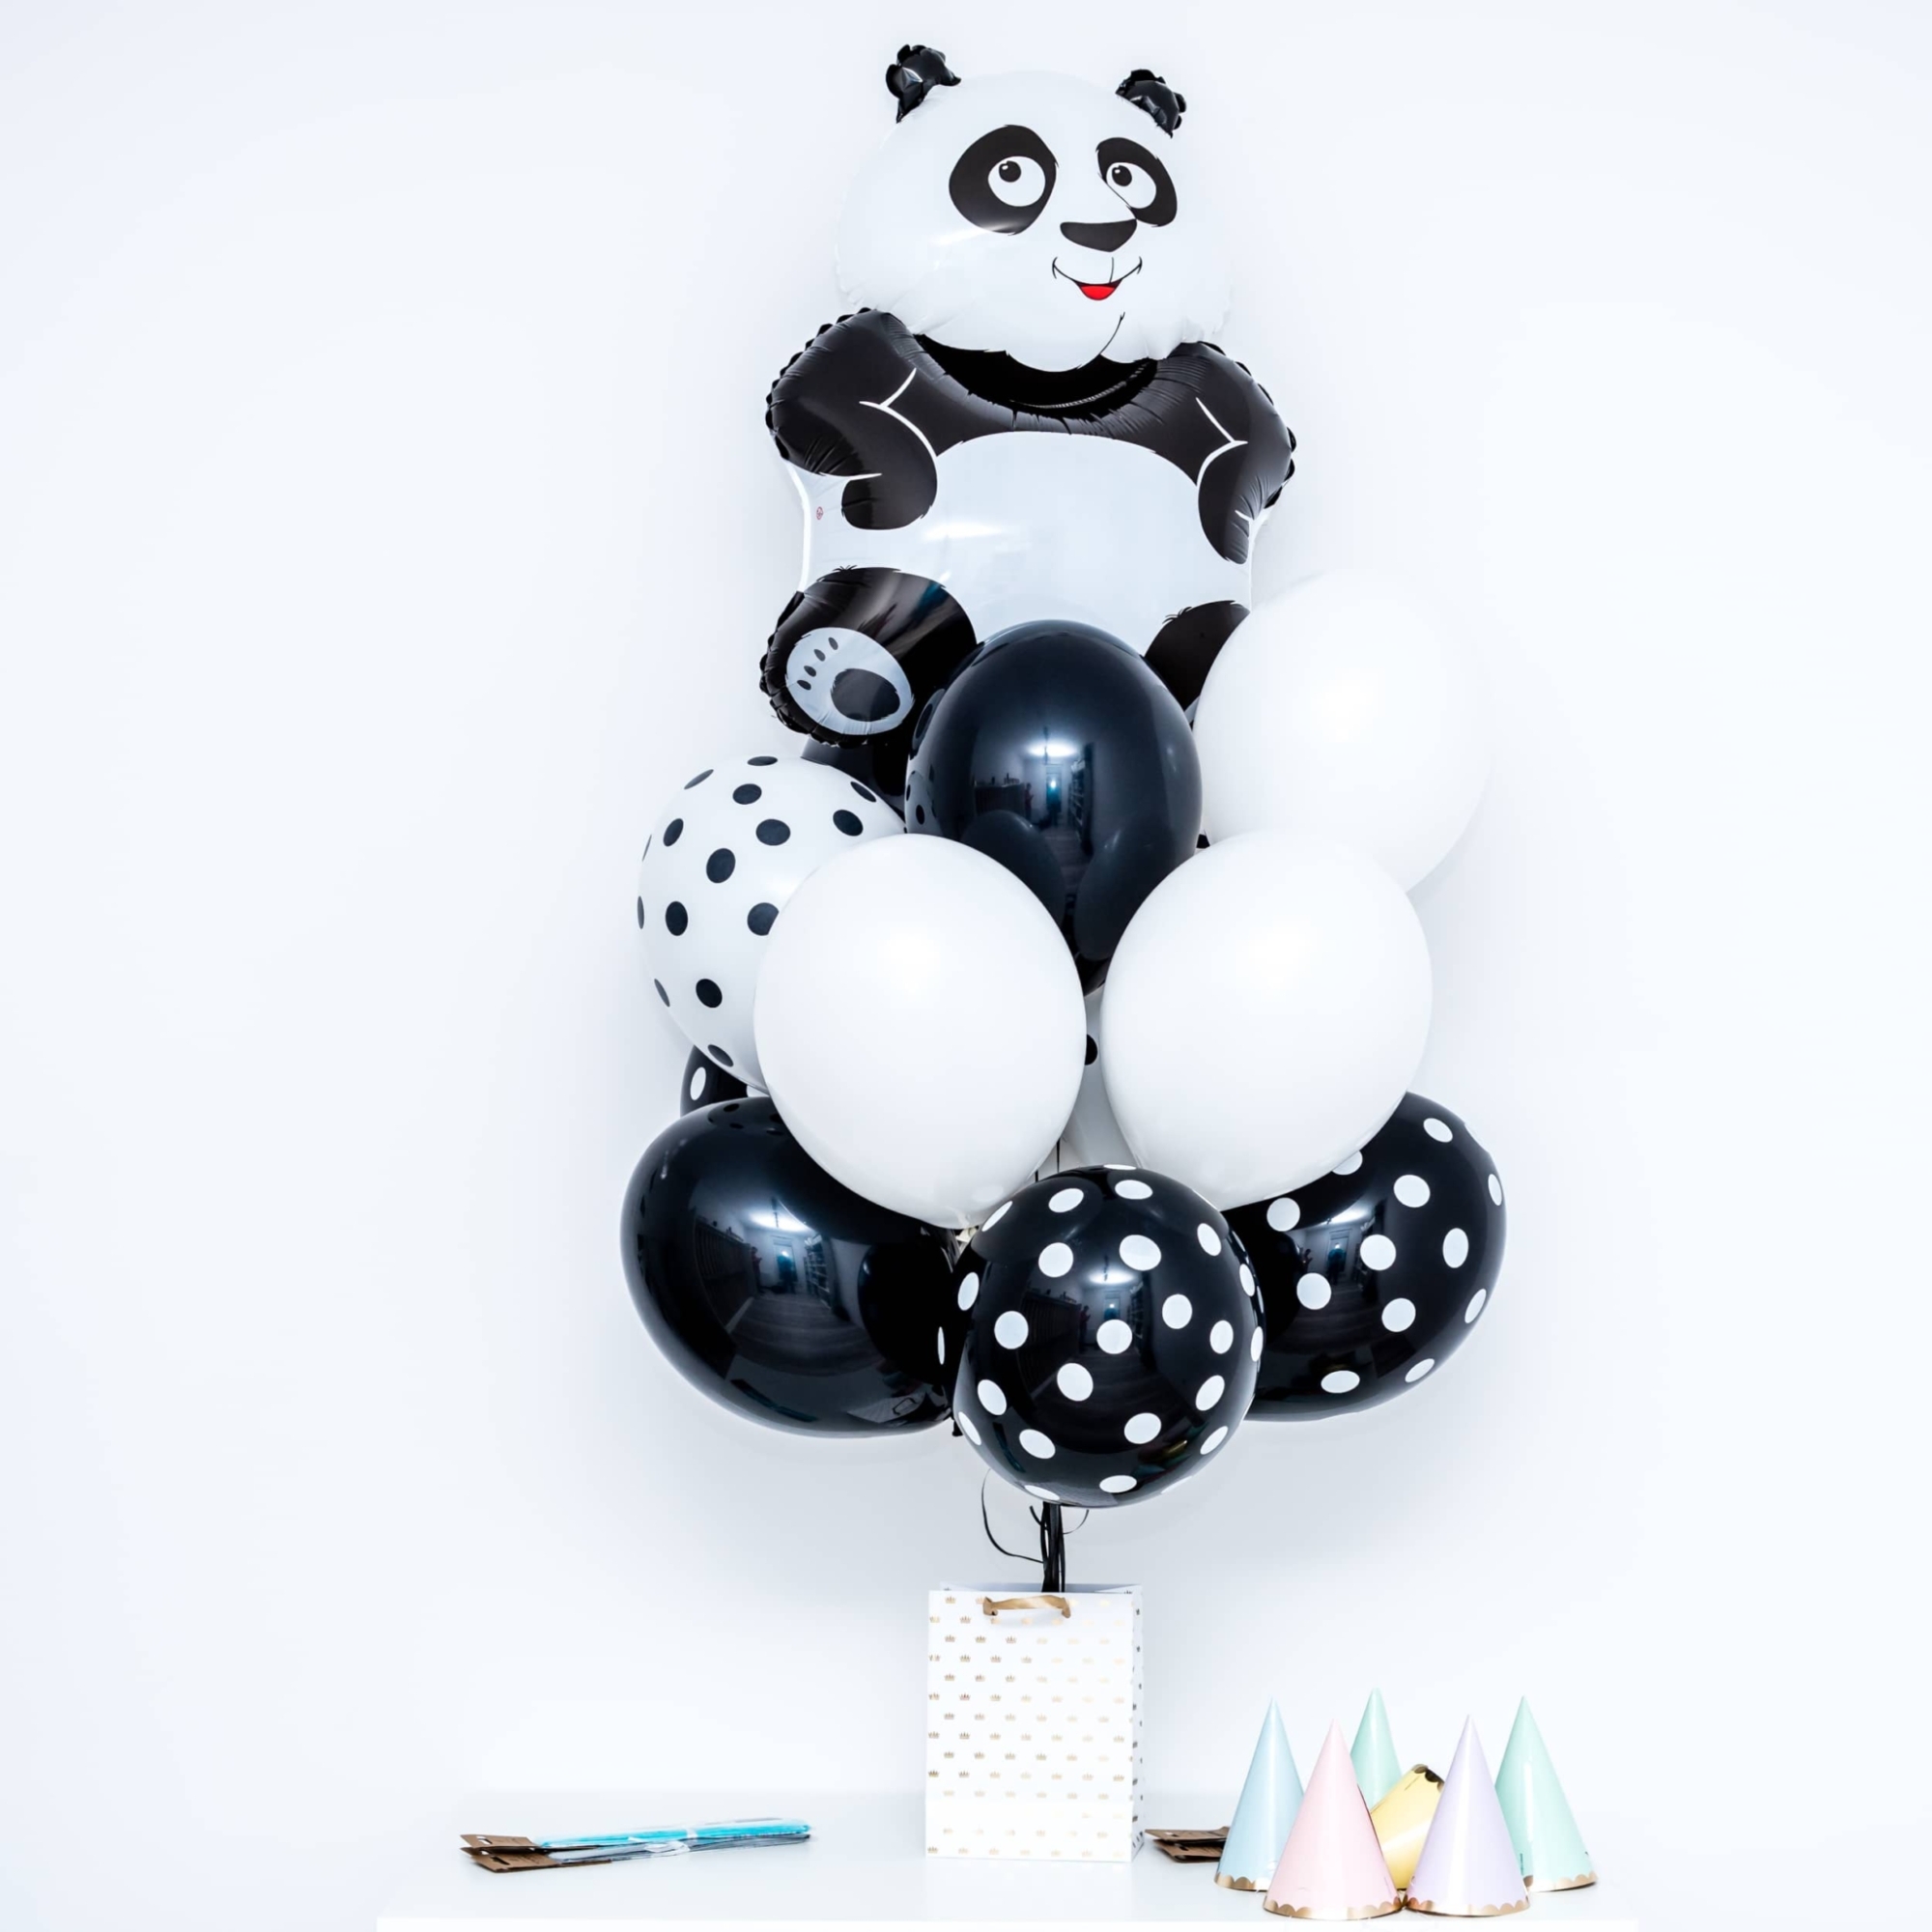 Bukiet balonowy: Cute Panda, napełniony helem Balony dla Dziecka Szalony.pl - Sklep imprezowy